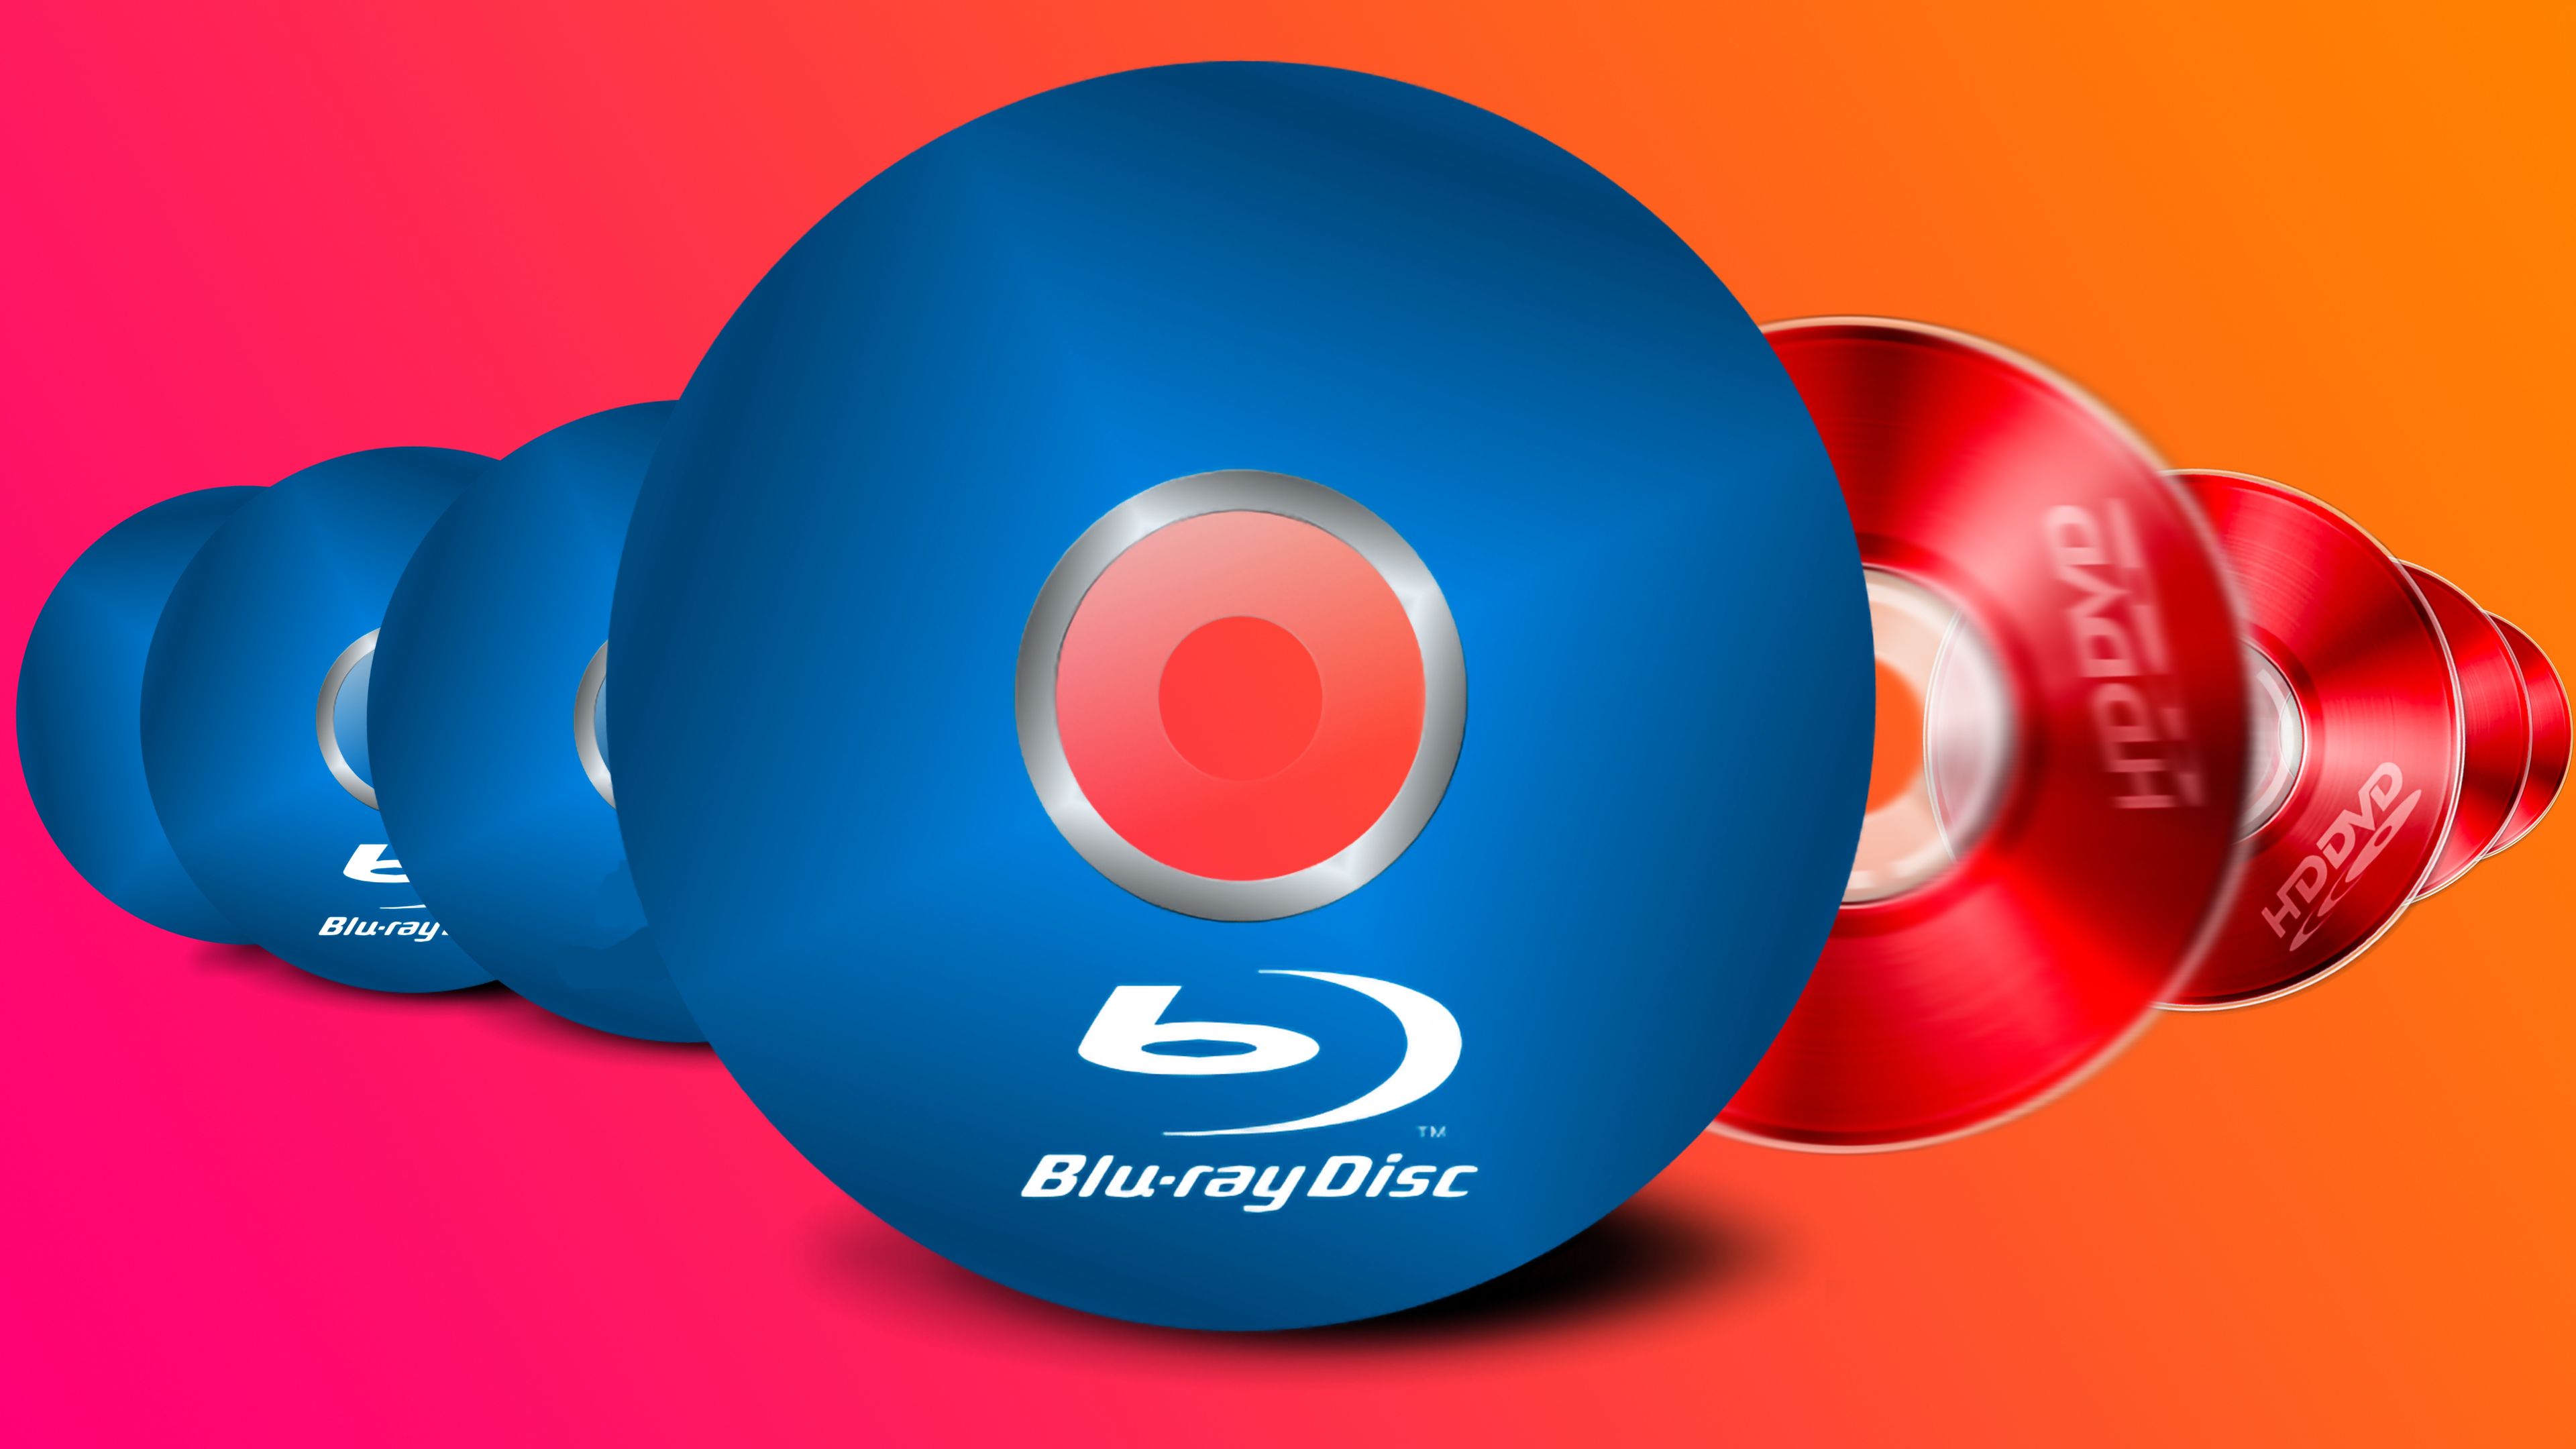 Por qué Blu-ray triunfó sobre HD DVD: capacidad, PlayStation 3 y  popularidad en la compra de películas. — Eightify